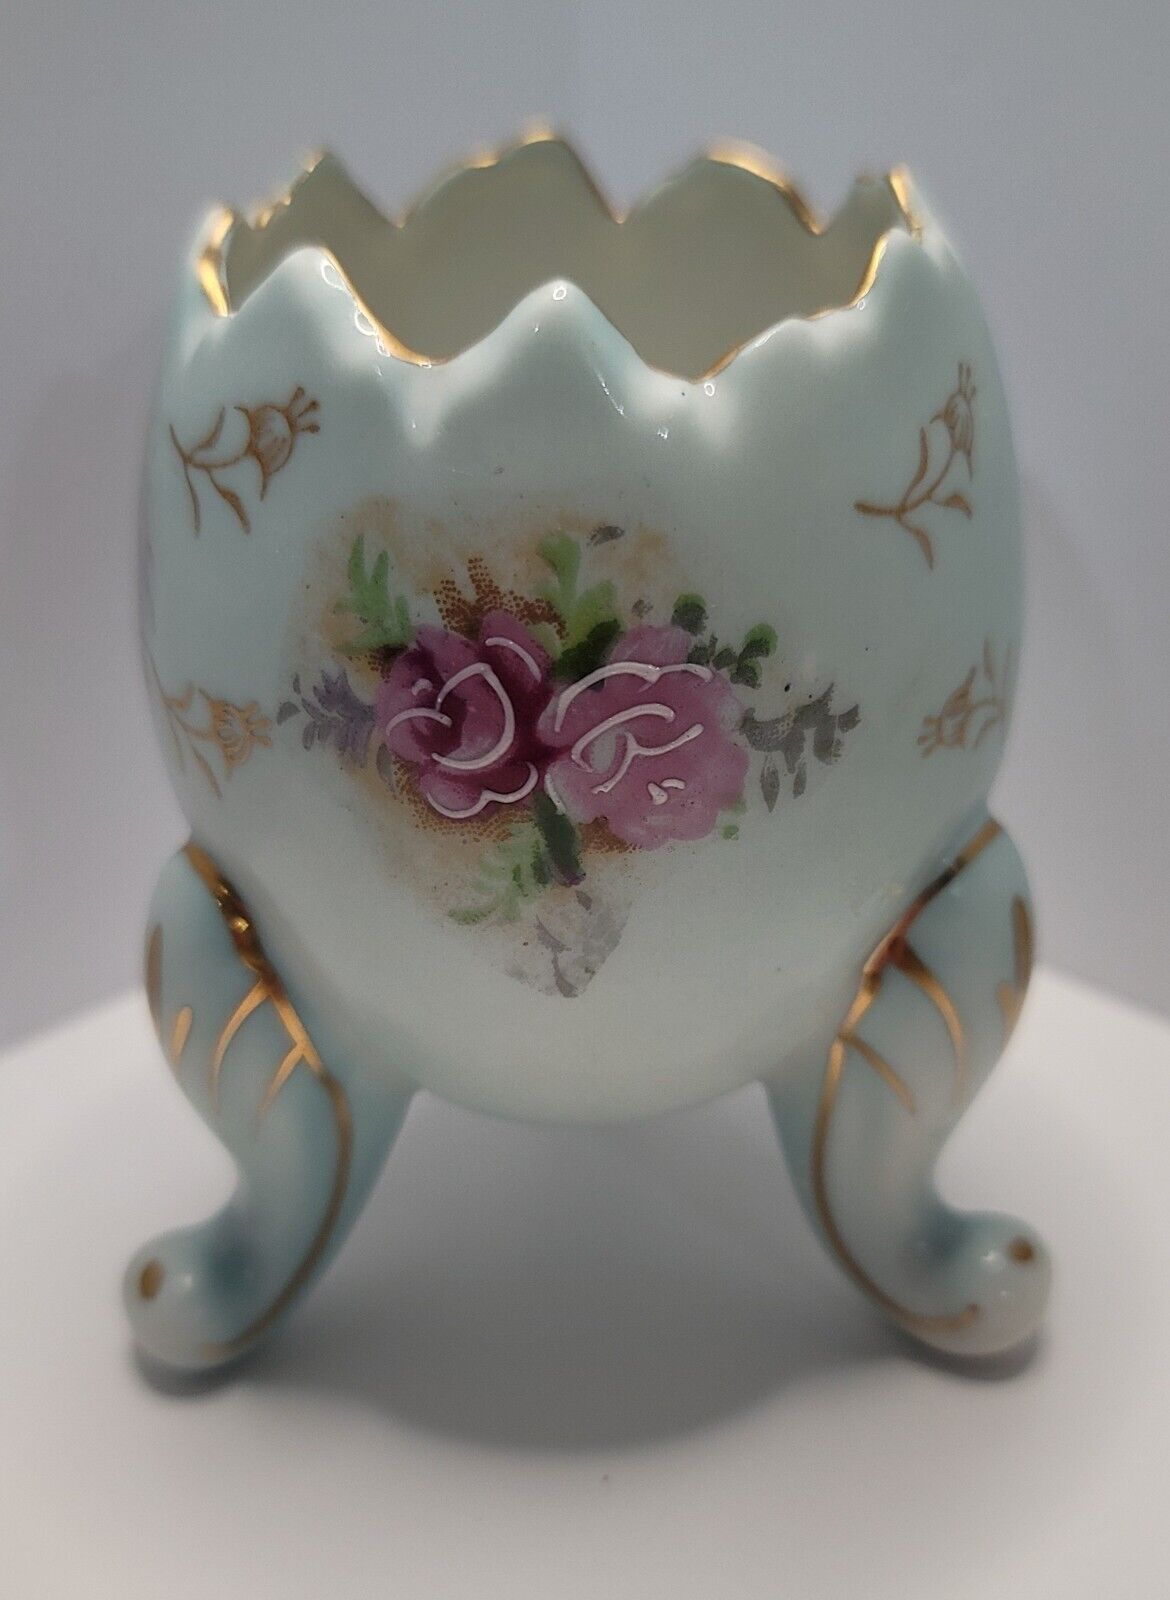 Napcoware Egg Cup Porcelain Gold Trim Footed Vase Japan Vintage Blue Pink Gold 